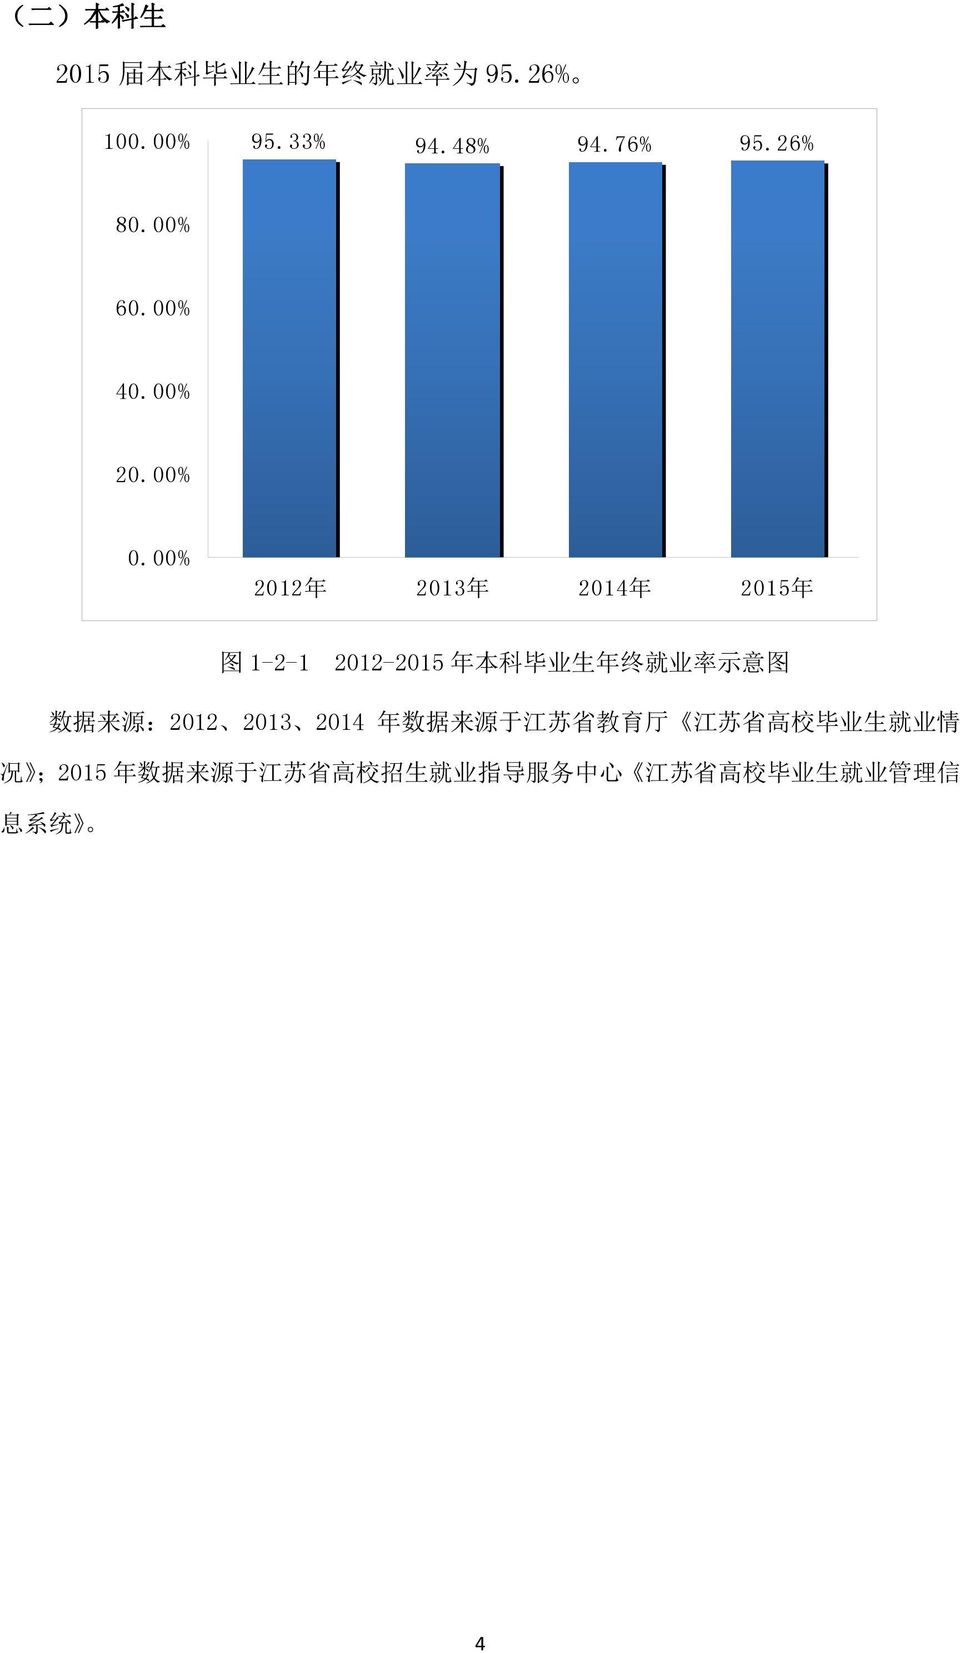 00% 2012 年 2013 年 2014 年 2015 年 图 1-2-1 2012-2015 年 本 科 毕 业 生 年 终 就 业 率 示 意 图 数 据 来 源